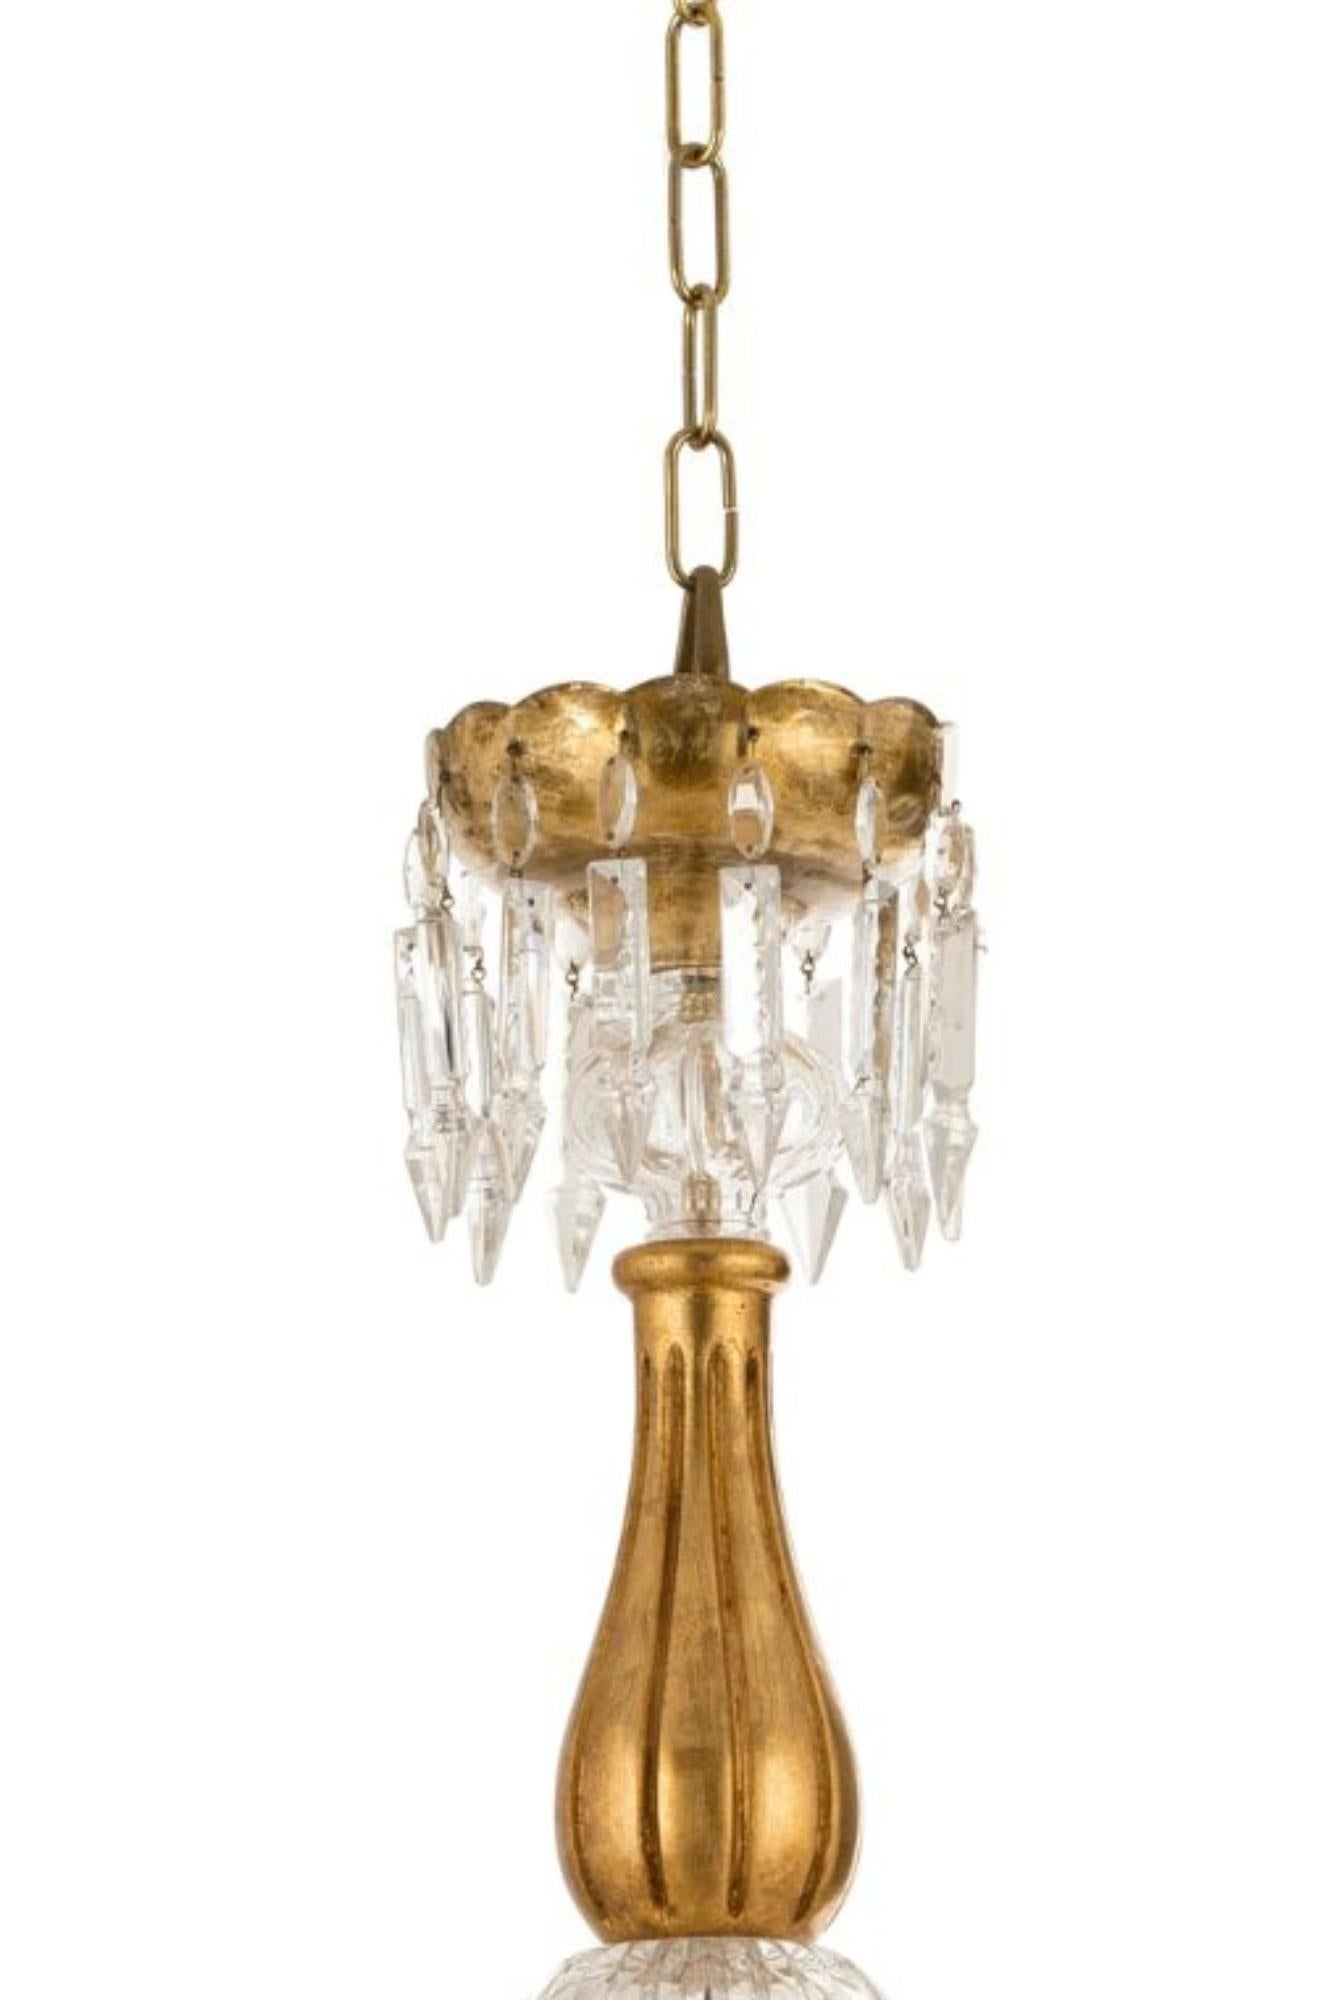 Porta l'eleganza classica nella tua casa con questo lampadario a 6 luci. La sua struttura in bronzo e cristallo aggiunge un tocco di lusso e raffinatezza a qualsiasi ambiente. Illumina il tuo spazio con stile e sofisticazione grazie a questo